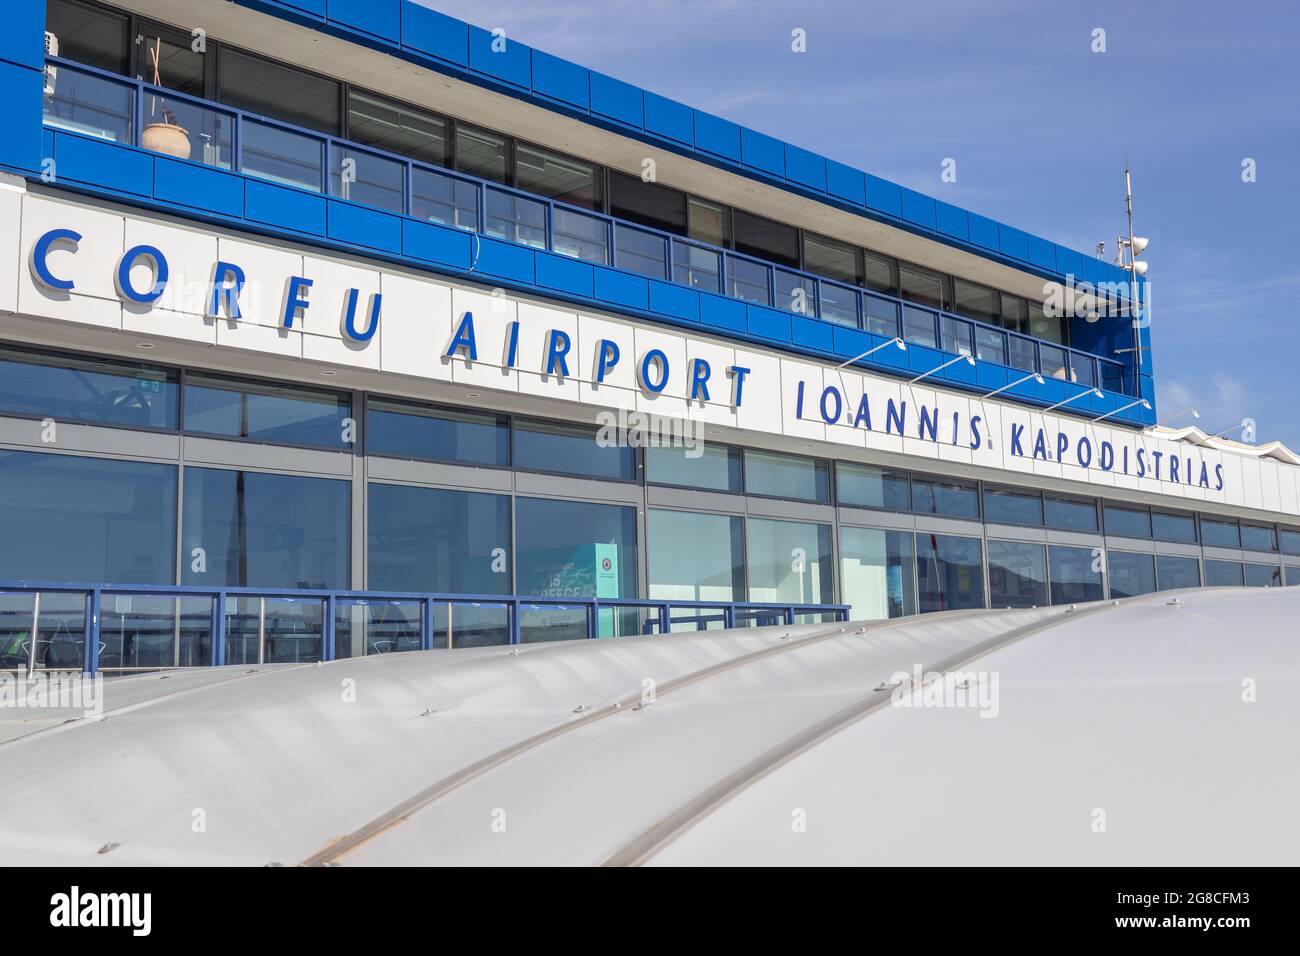 Internationaler Flughafen Korfu Ioannis Kapodistrias auf einer griechischen  Insel Korfu, auch Kerkyra genannt, in Korfu Stadt Stockfotografie - Alamy